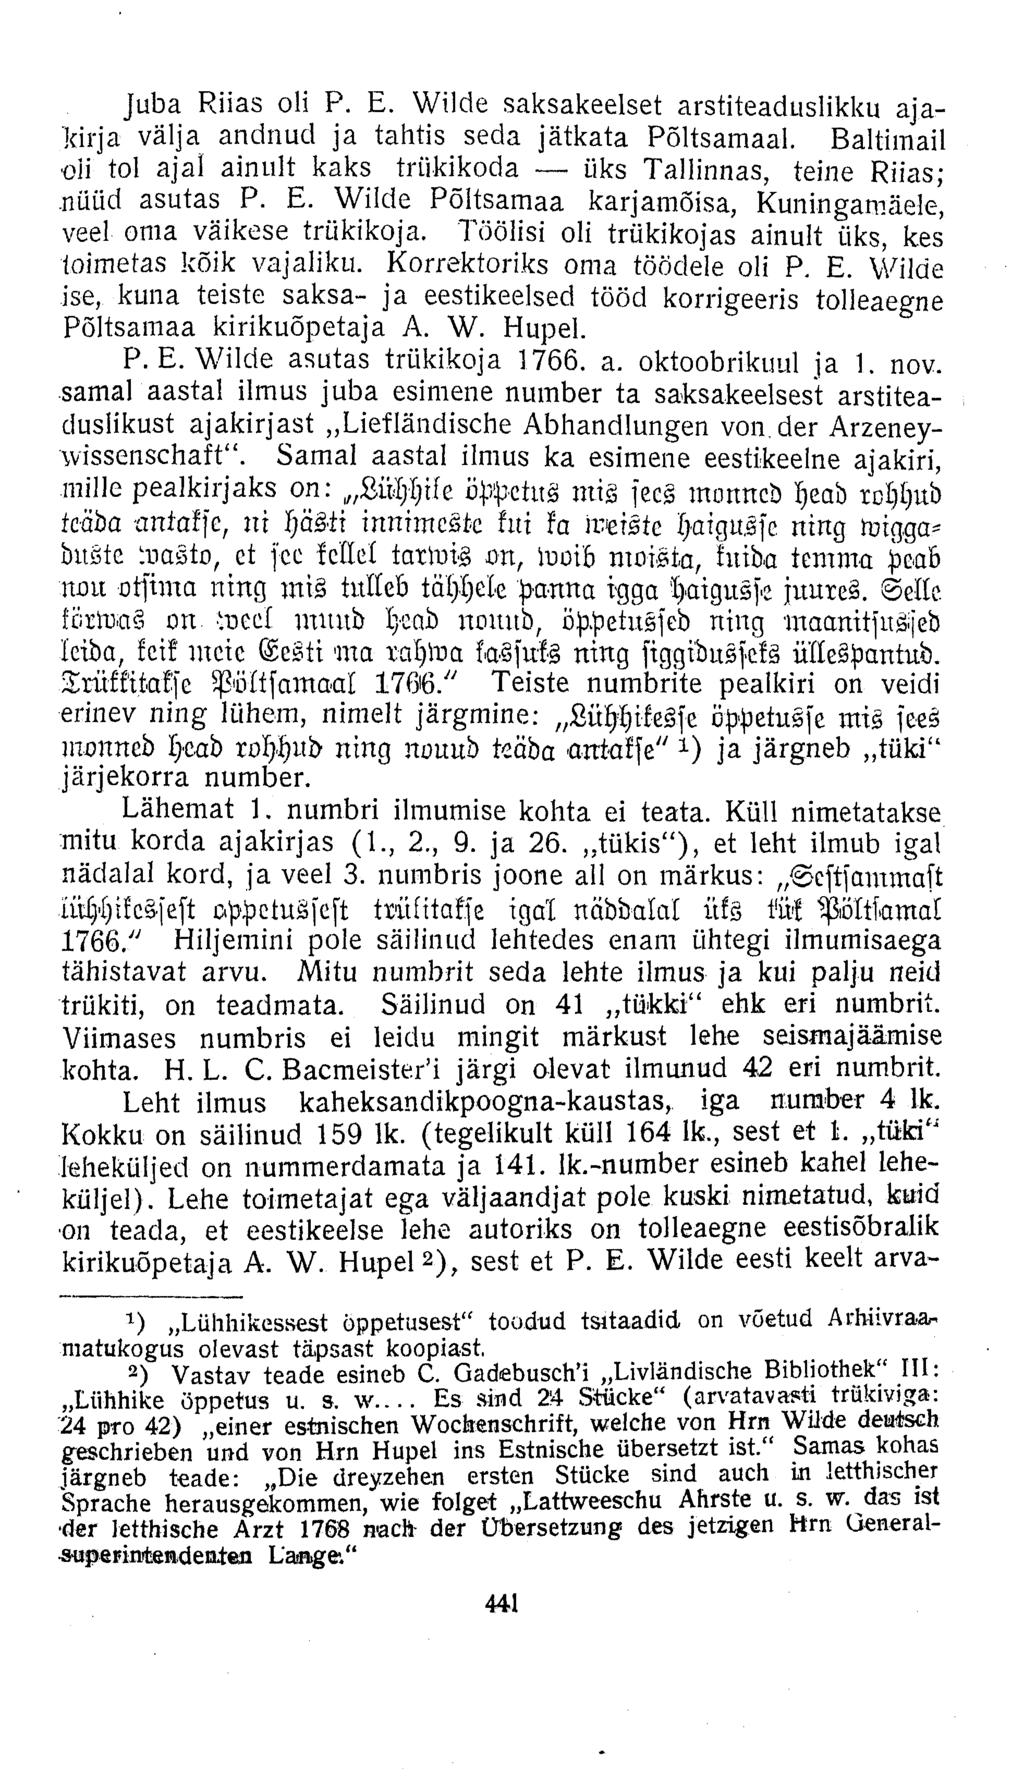 Juba Riias oli P. E. Wilde saksakeelset arstiteaduslikku ajakirja välja andnud ja tahtis seda jätkata Põltsamaal. Baltimail oli tol ajal ainult kaks trükikoda üks Tallinnas, teine Riias;.